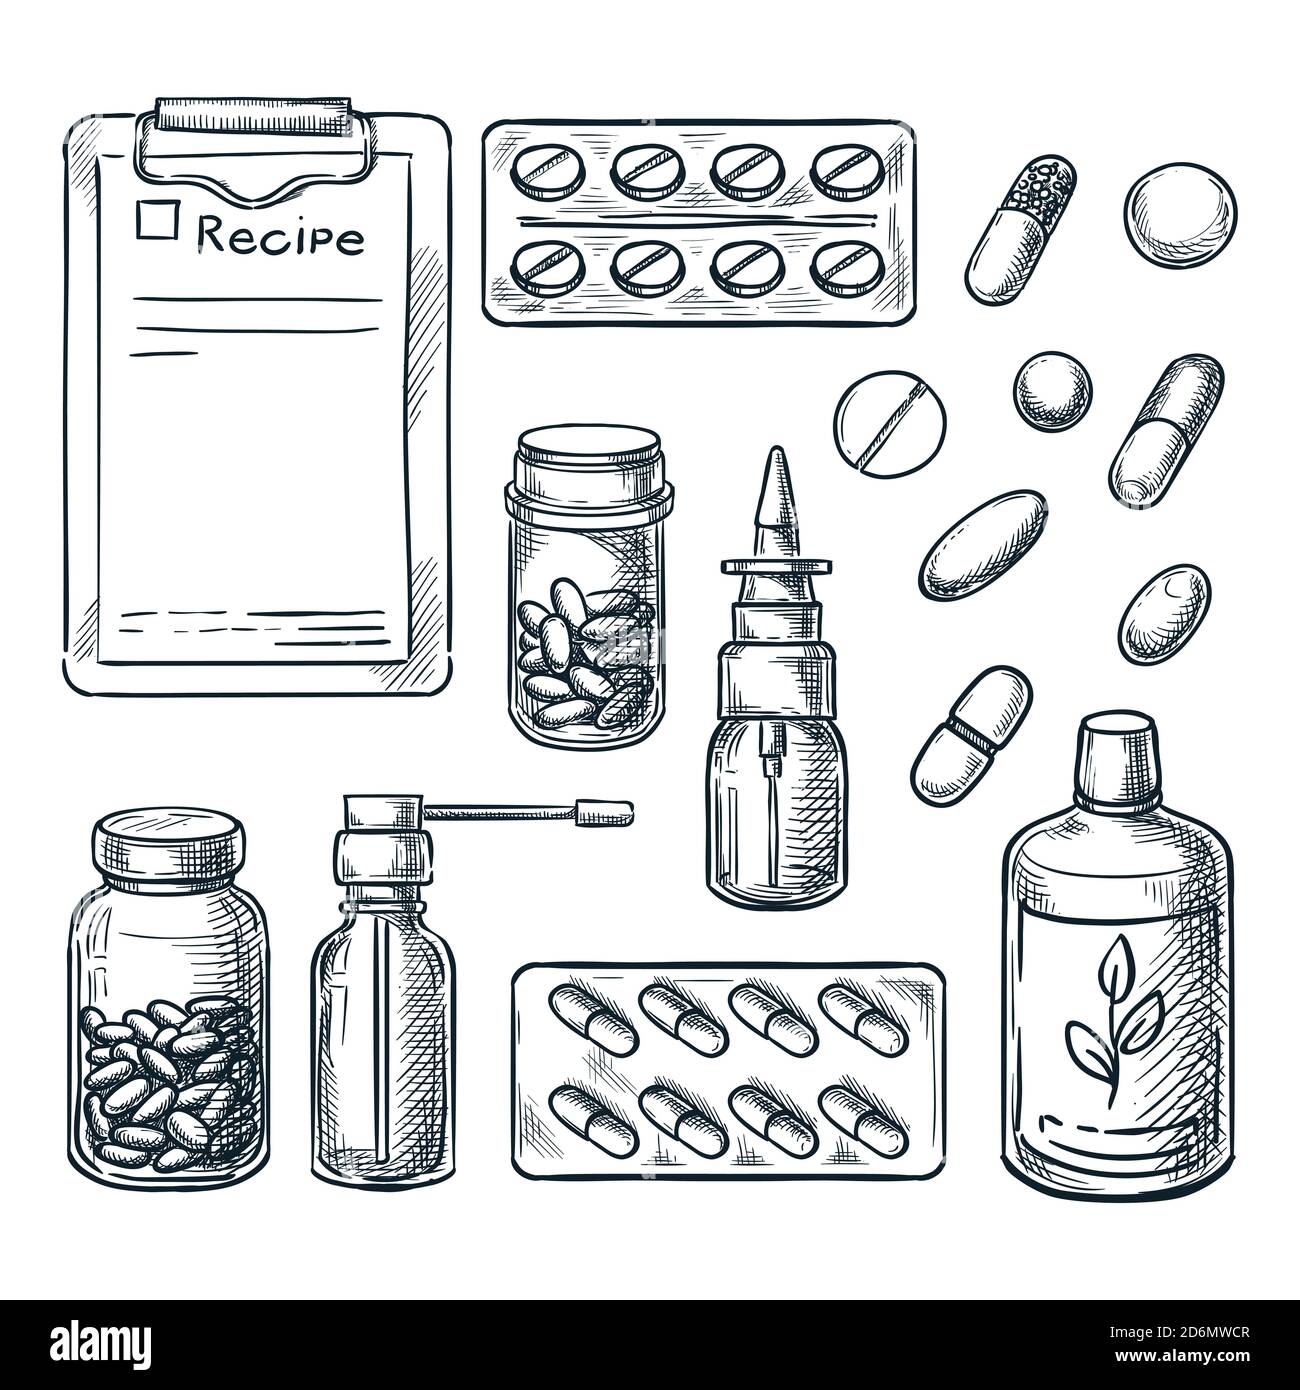 Pharmazie, Medizin und Gesundheitswesen Vektor Skizze Illustration. Pillen, Medikamente, Flaschen, verschreibungspflichtige handgezeichnete Symbole und Design-Elemente. Stock Vektor